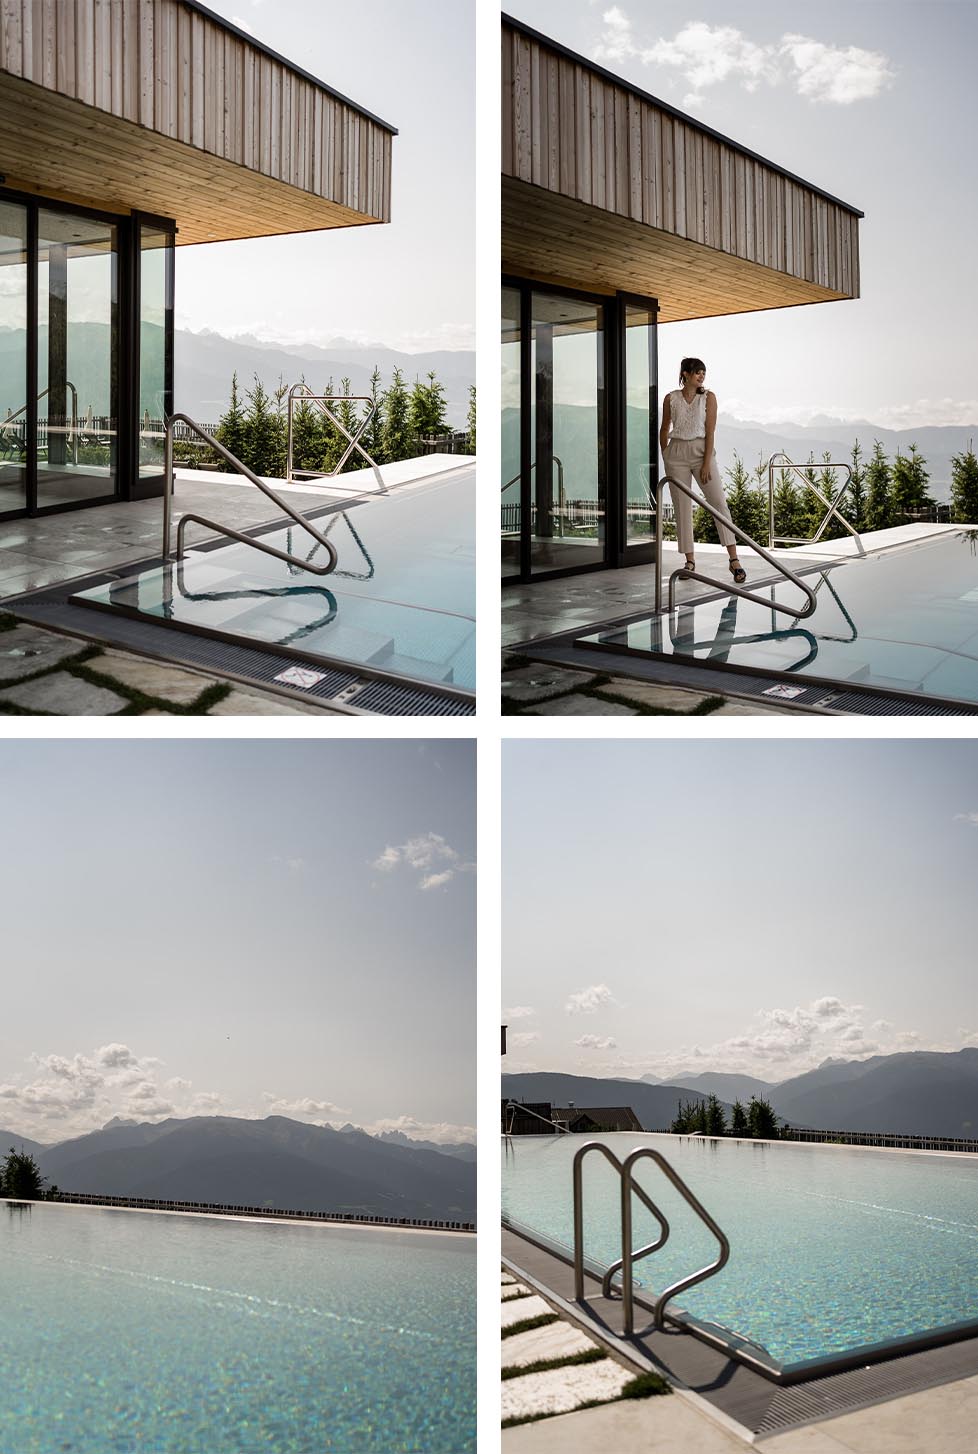 Tratterhof - das Mountain Sky Hotel in Südtirol